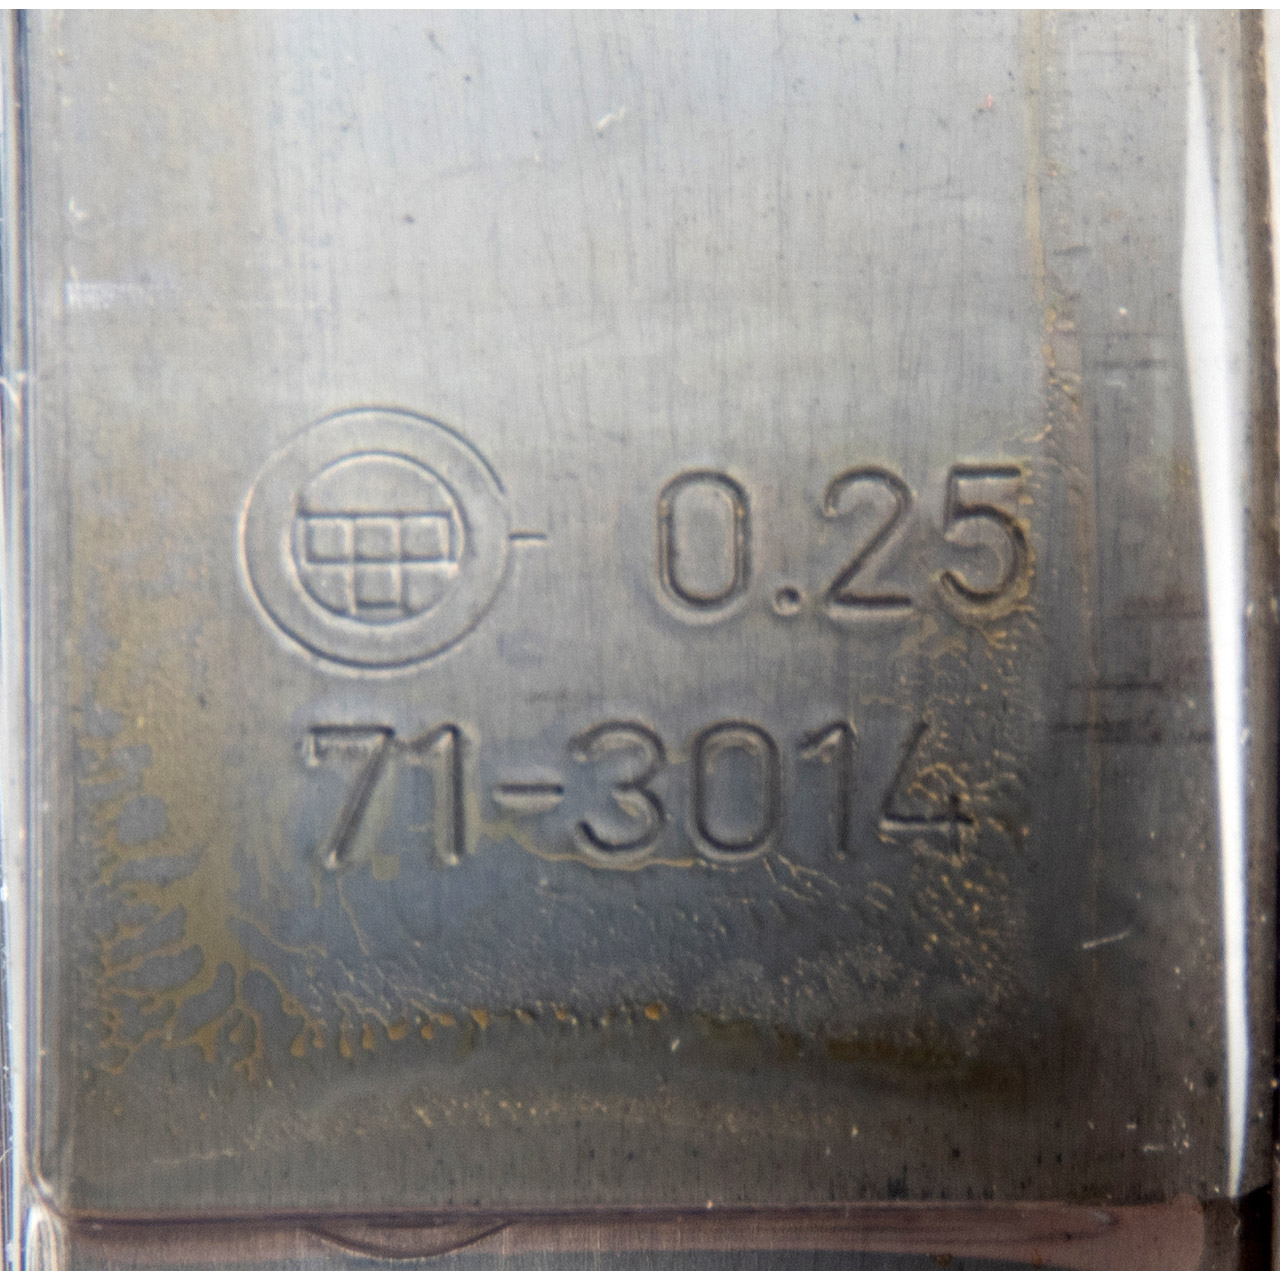 GLYCO 71-3014/6 0.25mm Pleuellagersatz PORSCHE 911 2.3-3.0 Turbo 91410314151